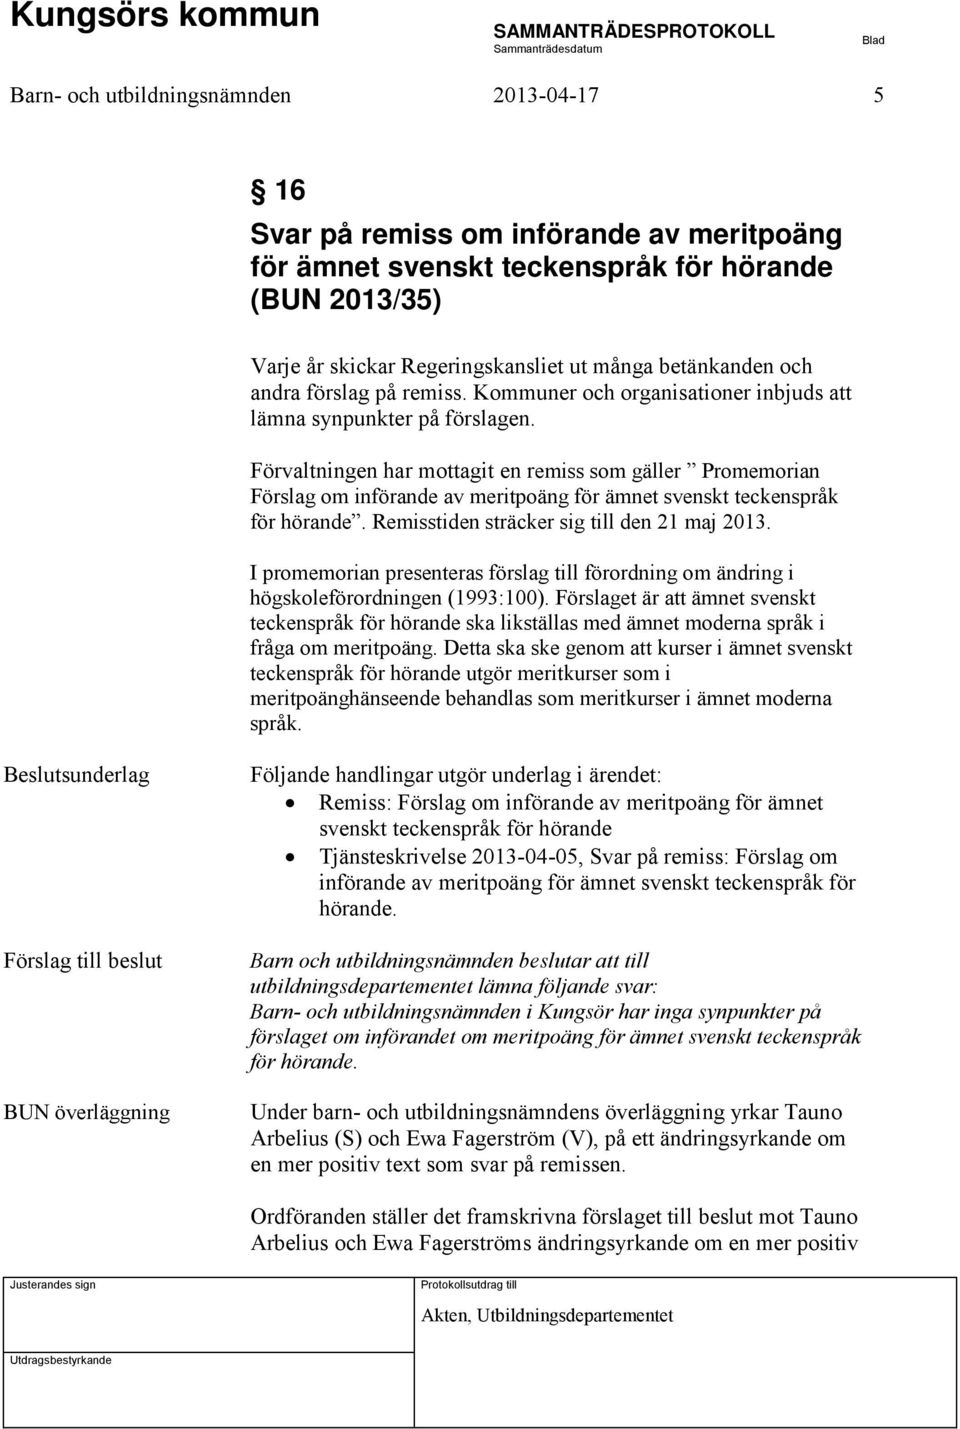 Förvaltningen har mottagit en remiss som gäller Promemorian Förslag om införande av meritpoäng för ämnet svenskt teckenspråk för hörande. Remisstiden sträcker sig till den 21 maj 2013.